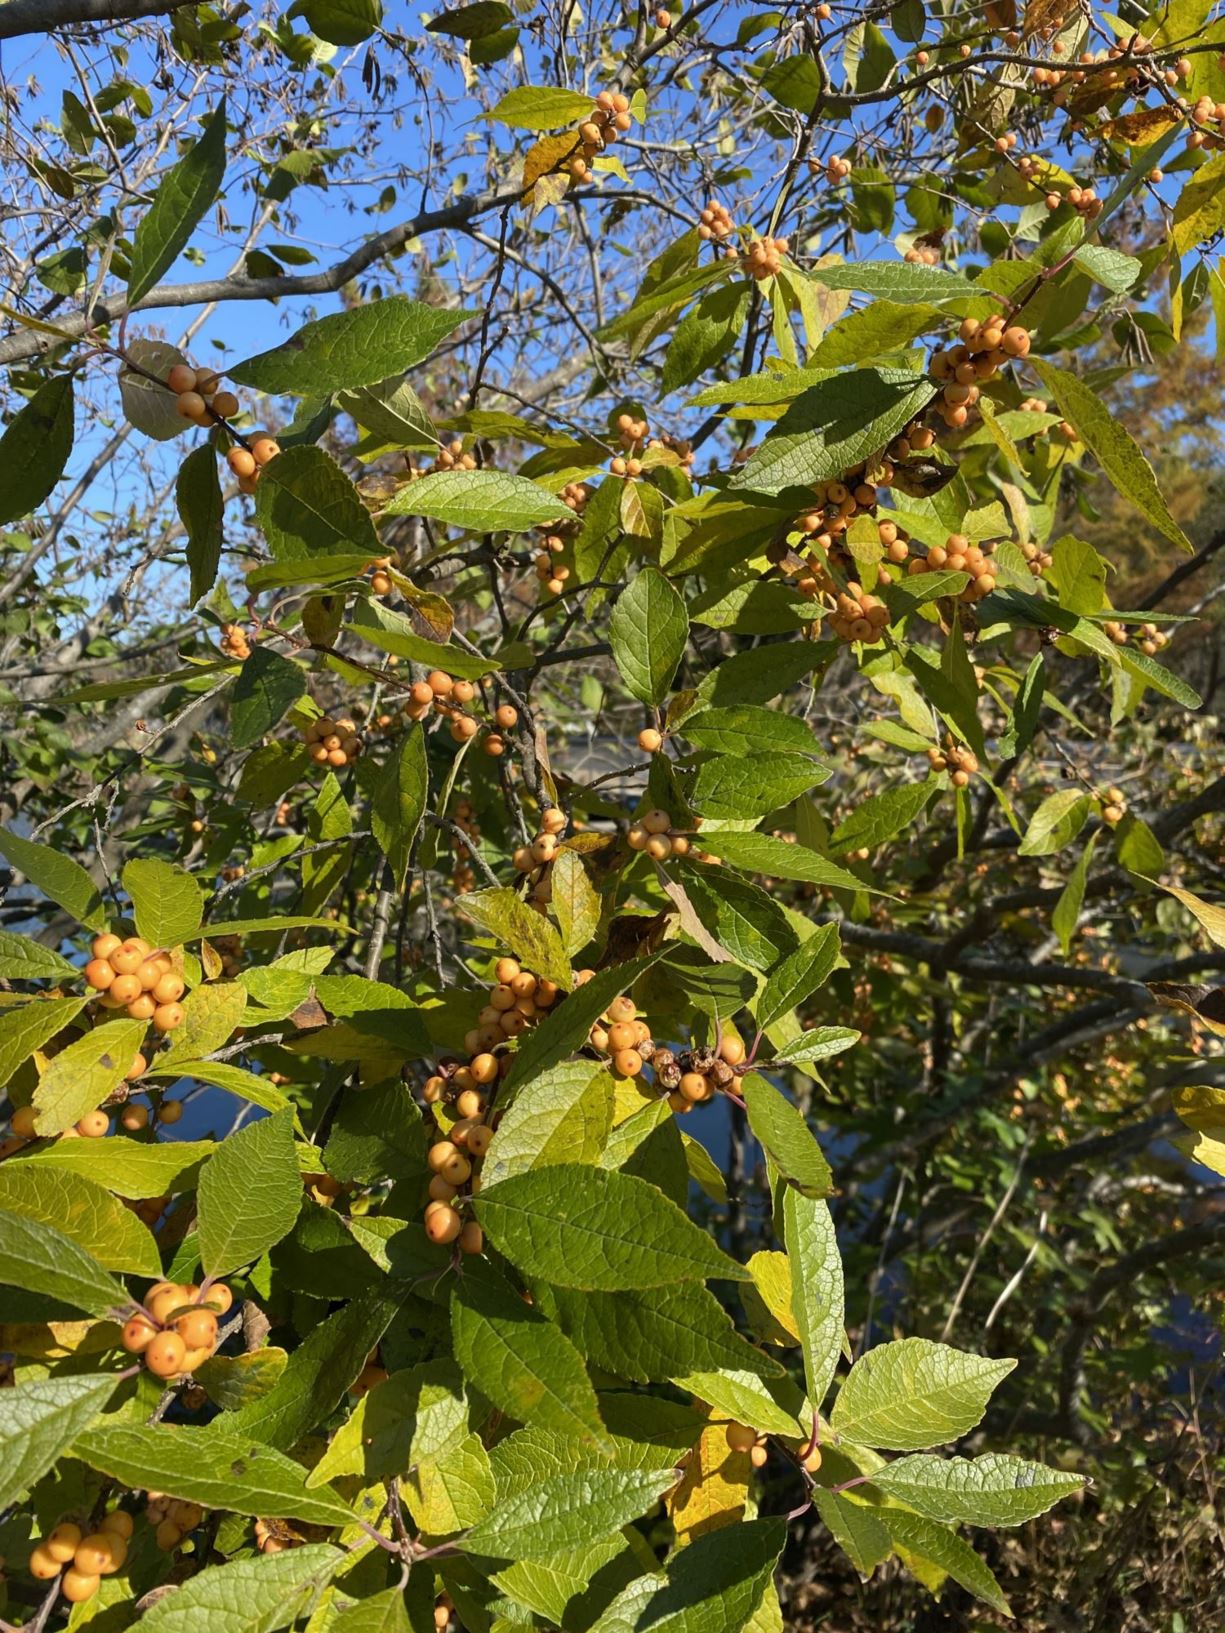 Ilex verticillata 'Winter Gold' - winterberry holly